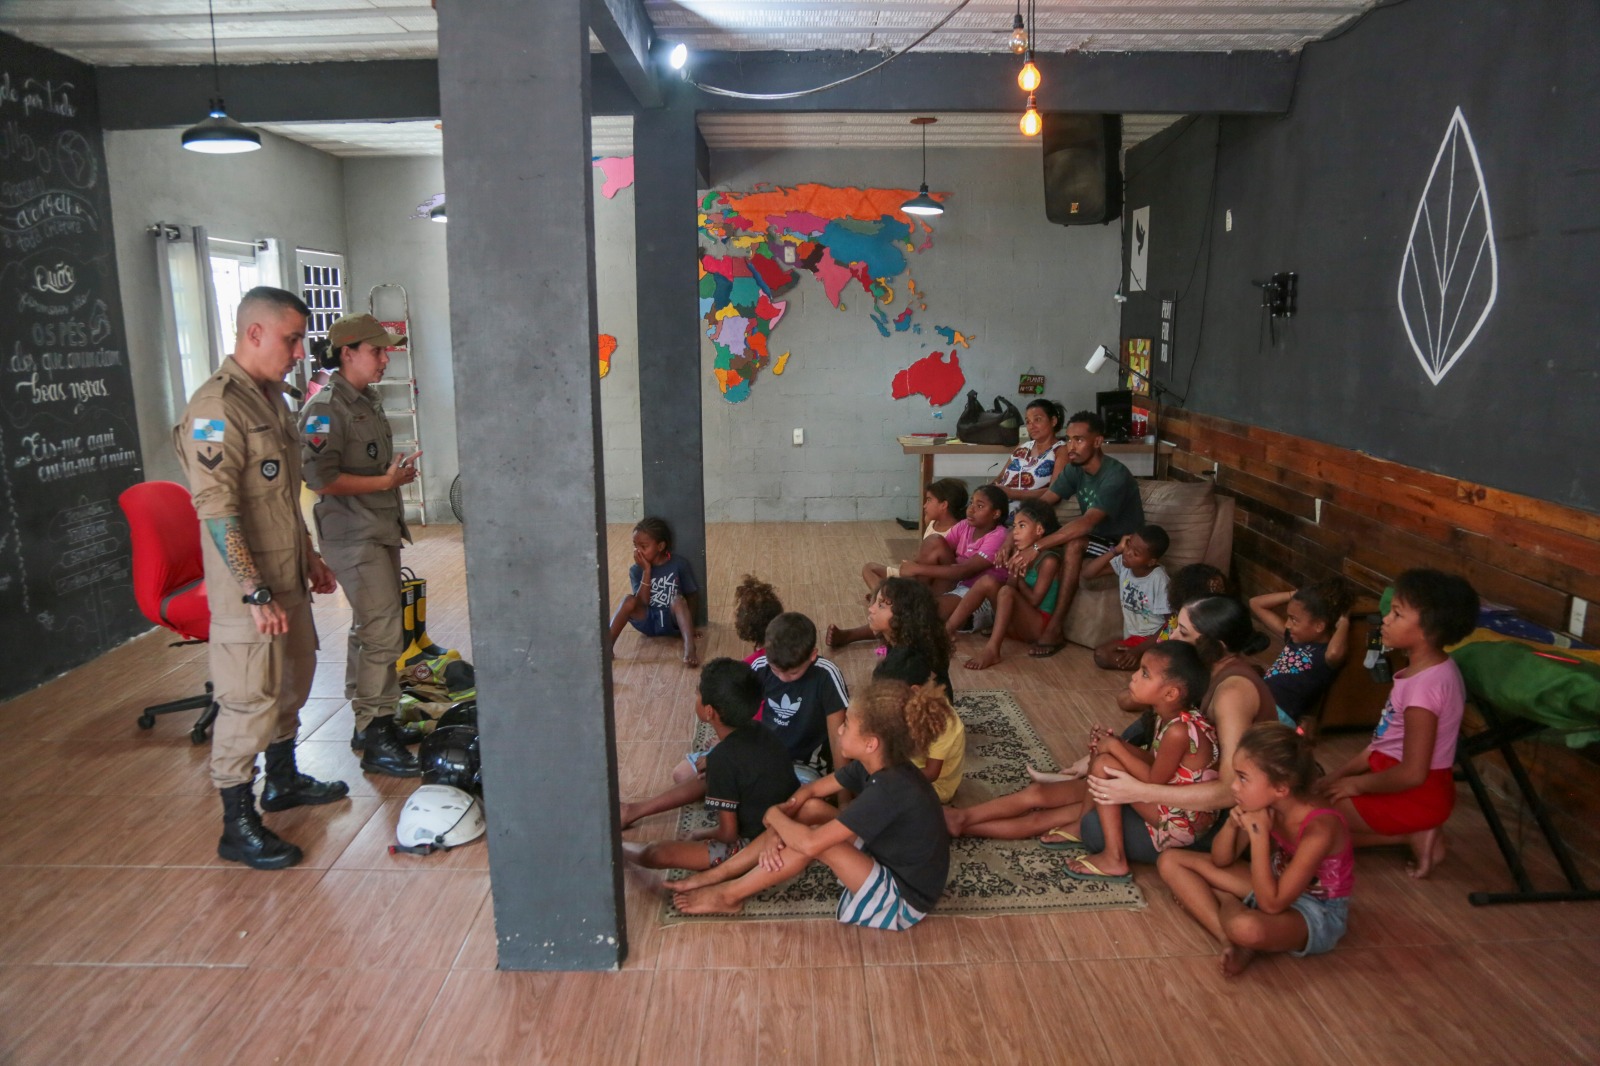 Bombeiros Militares do Rio realizam atividades educativas com crianças em Duque de Caxias